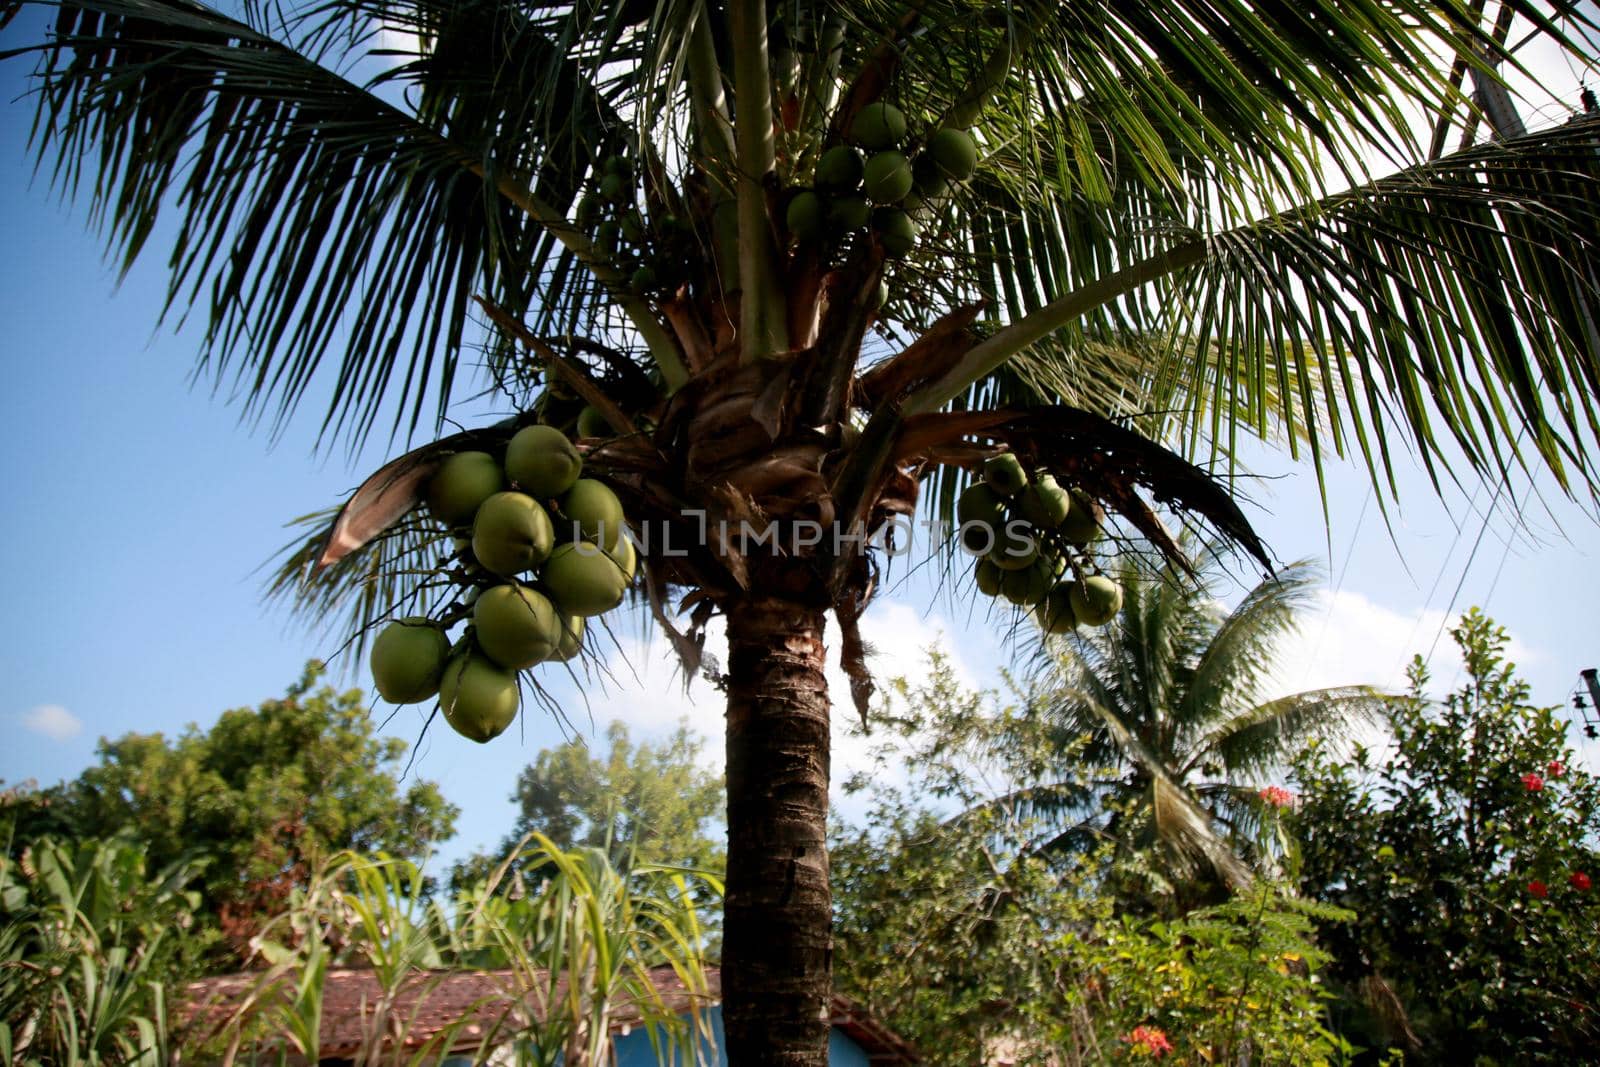 mata de sao joao, bahia / brazil - october 25, 2020: coconut tree is seen on a farm in the countryside in the city of Mata de Sao Joao.